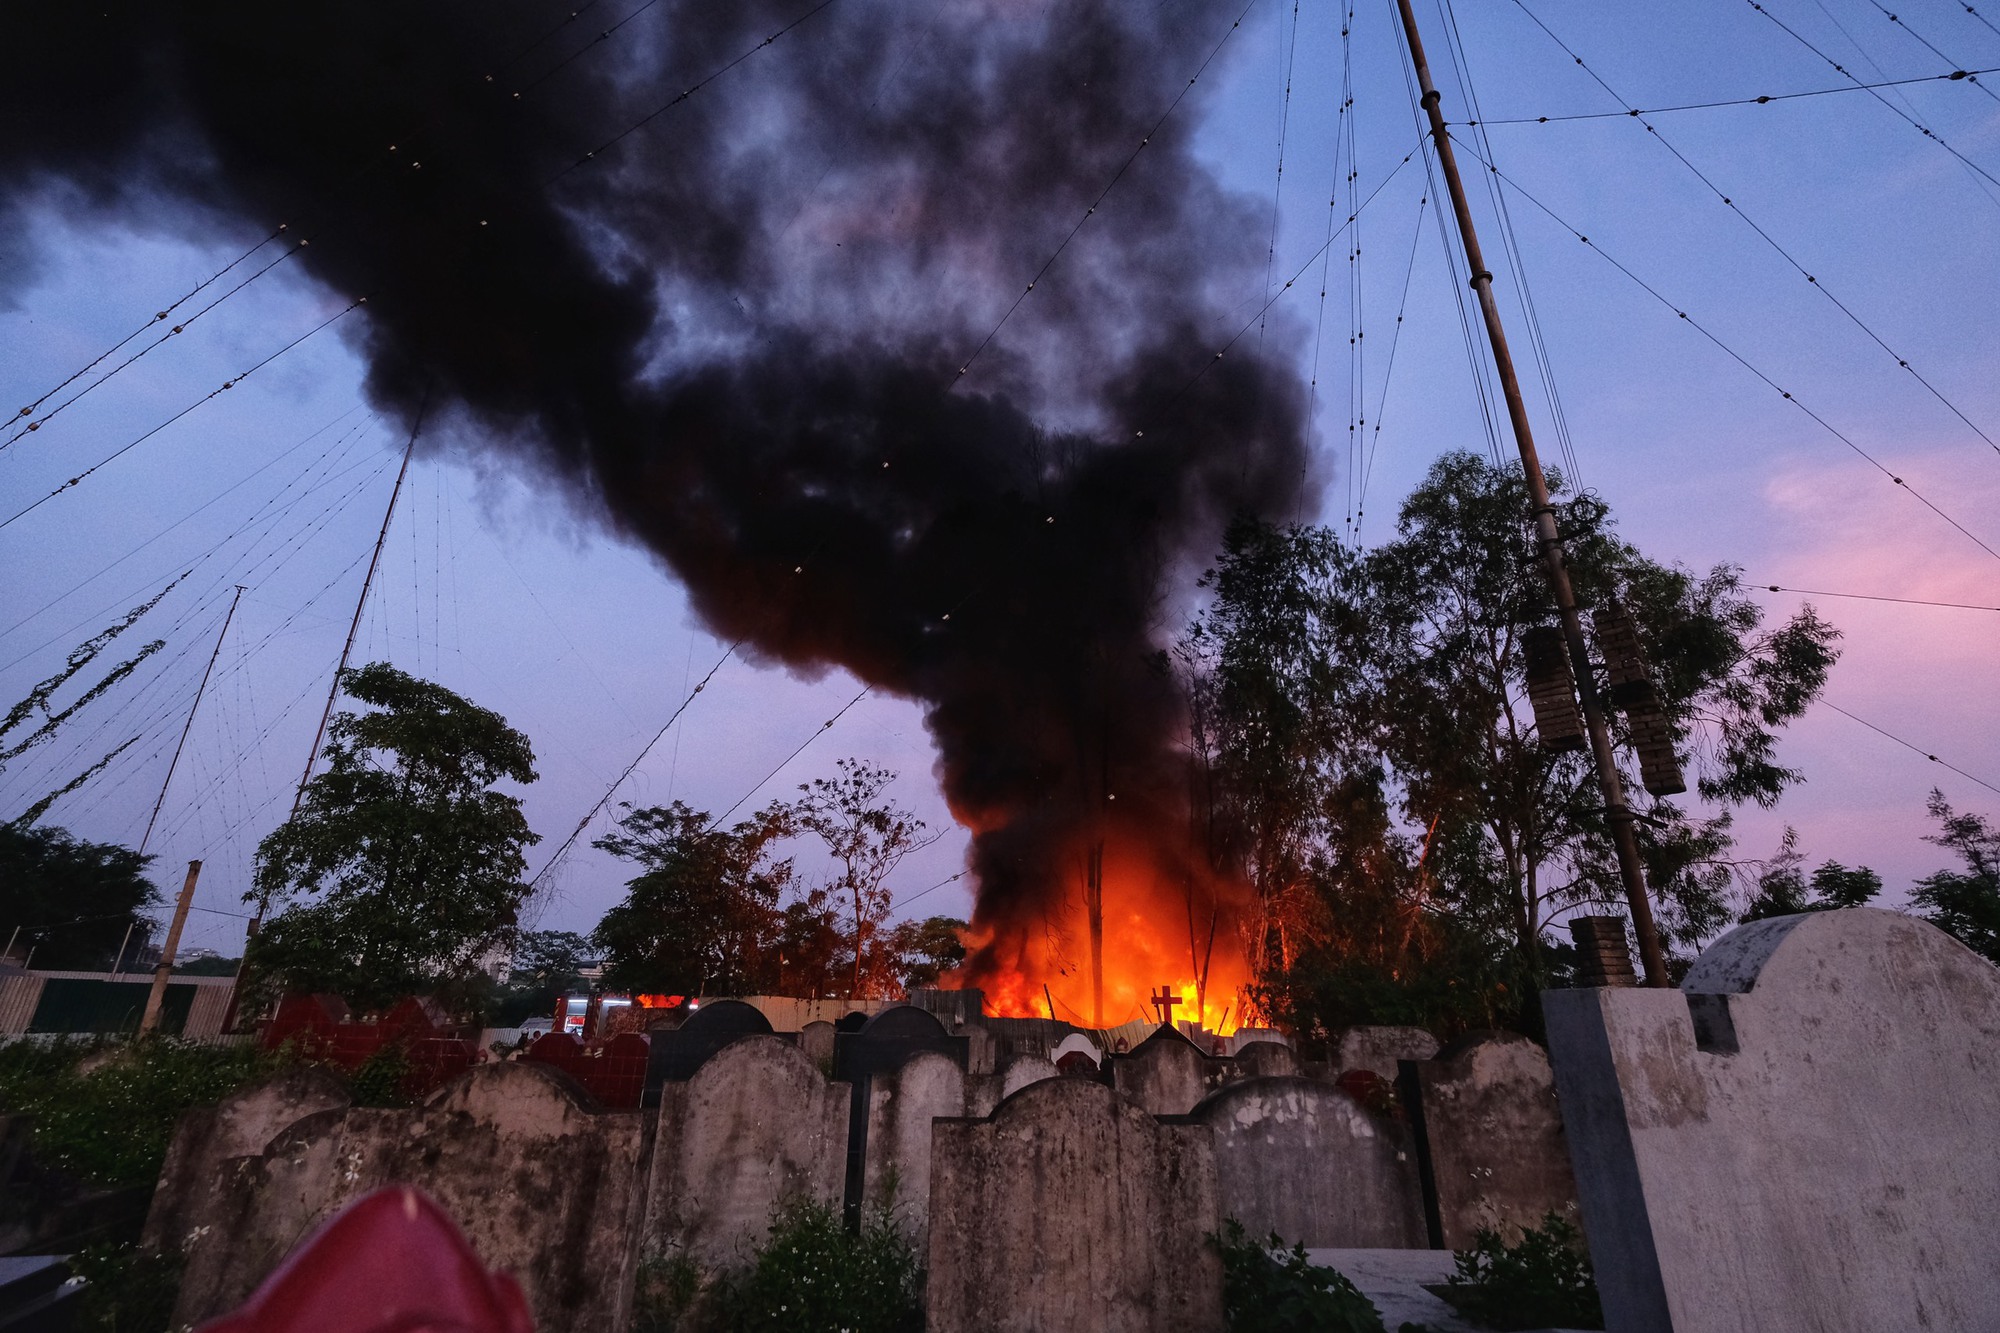 Hà Nội: Cháy lớn bãi nhựa cạnh nghĩa địa ở xã Tân Triều, cột khói bốc cao hàng trăm mét - Ảnh 6.